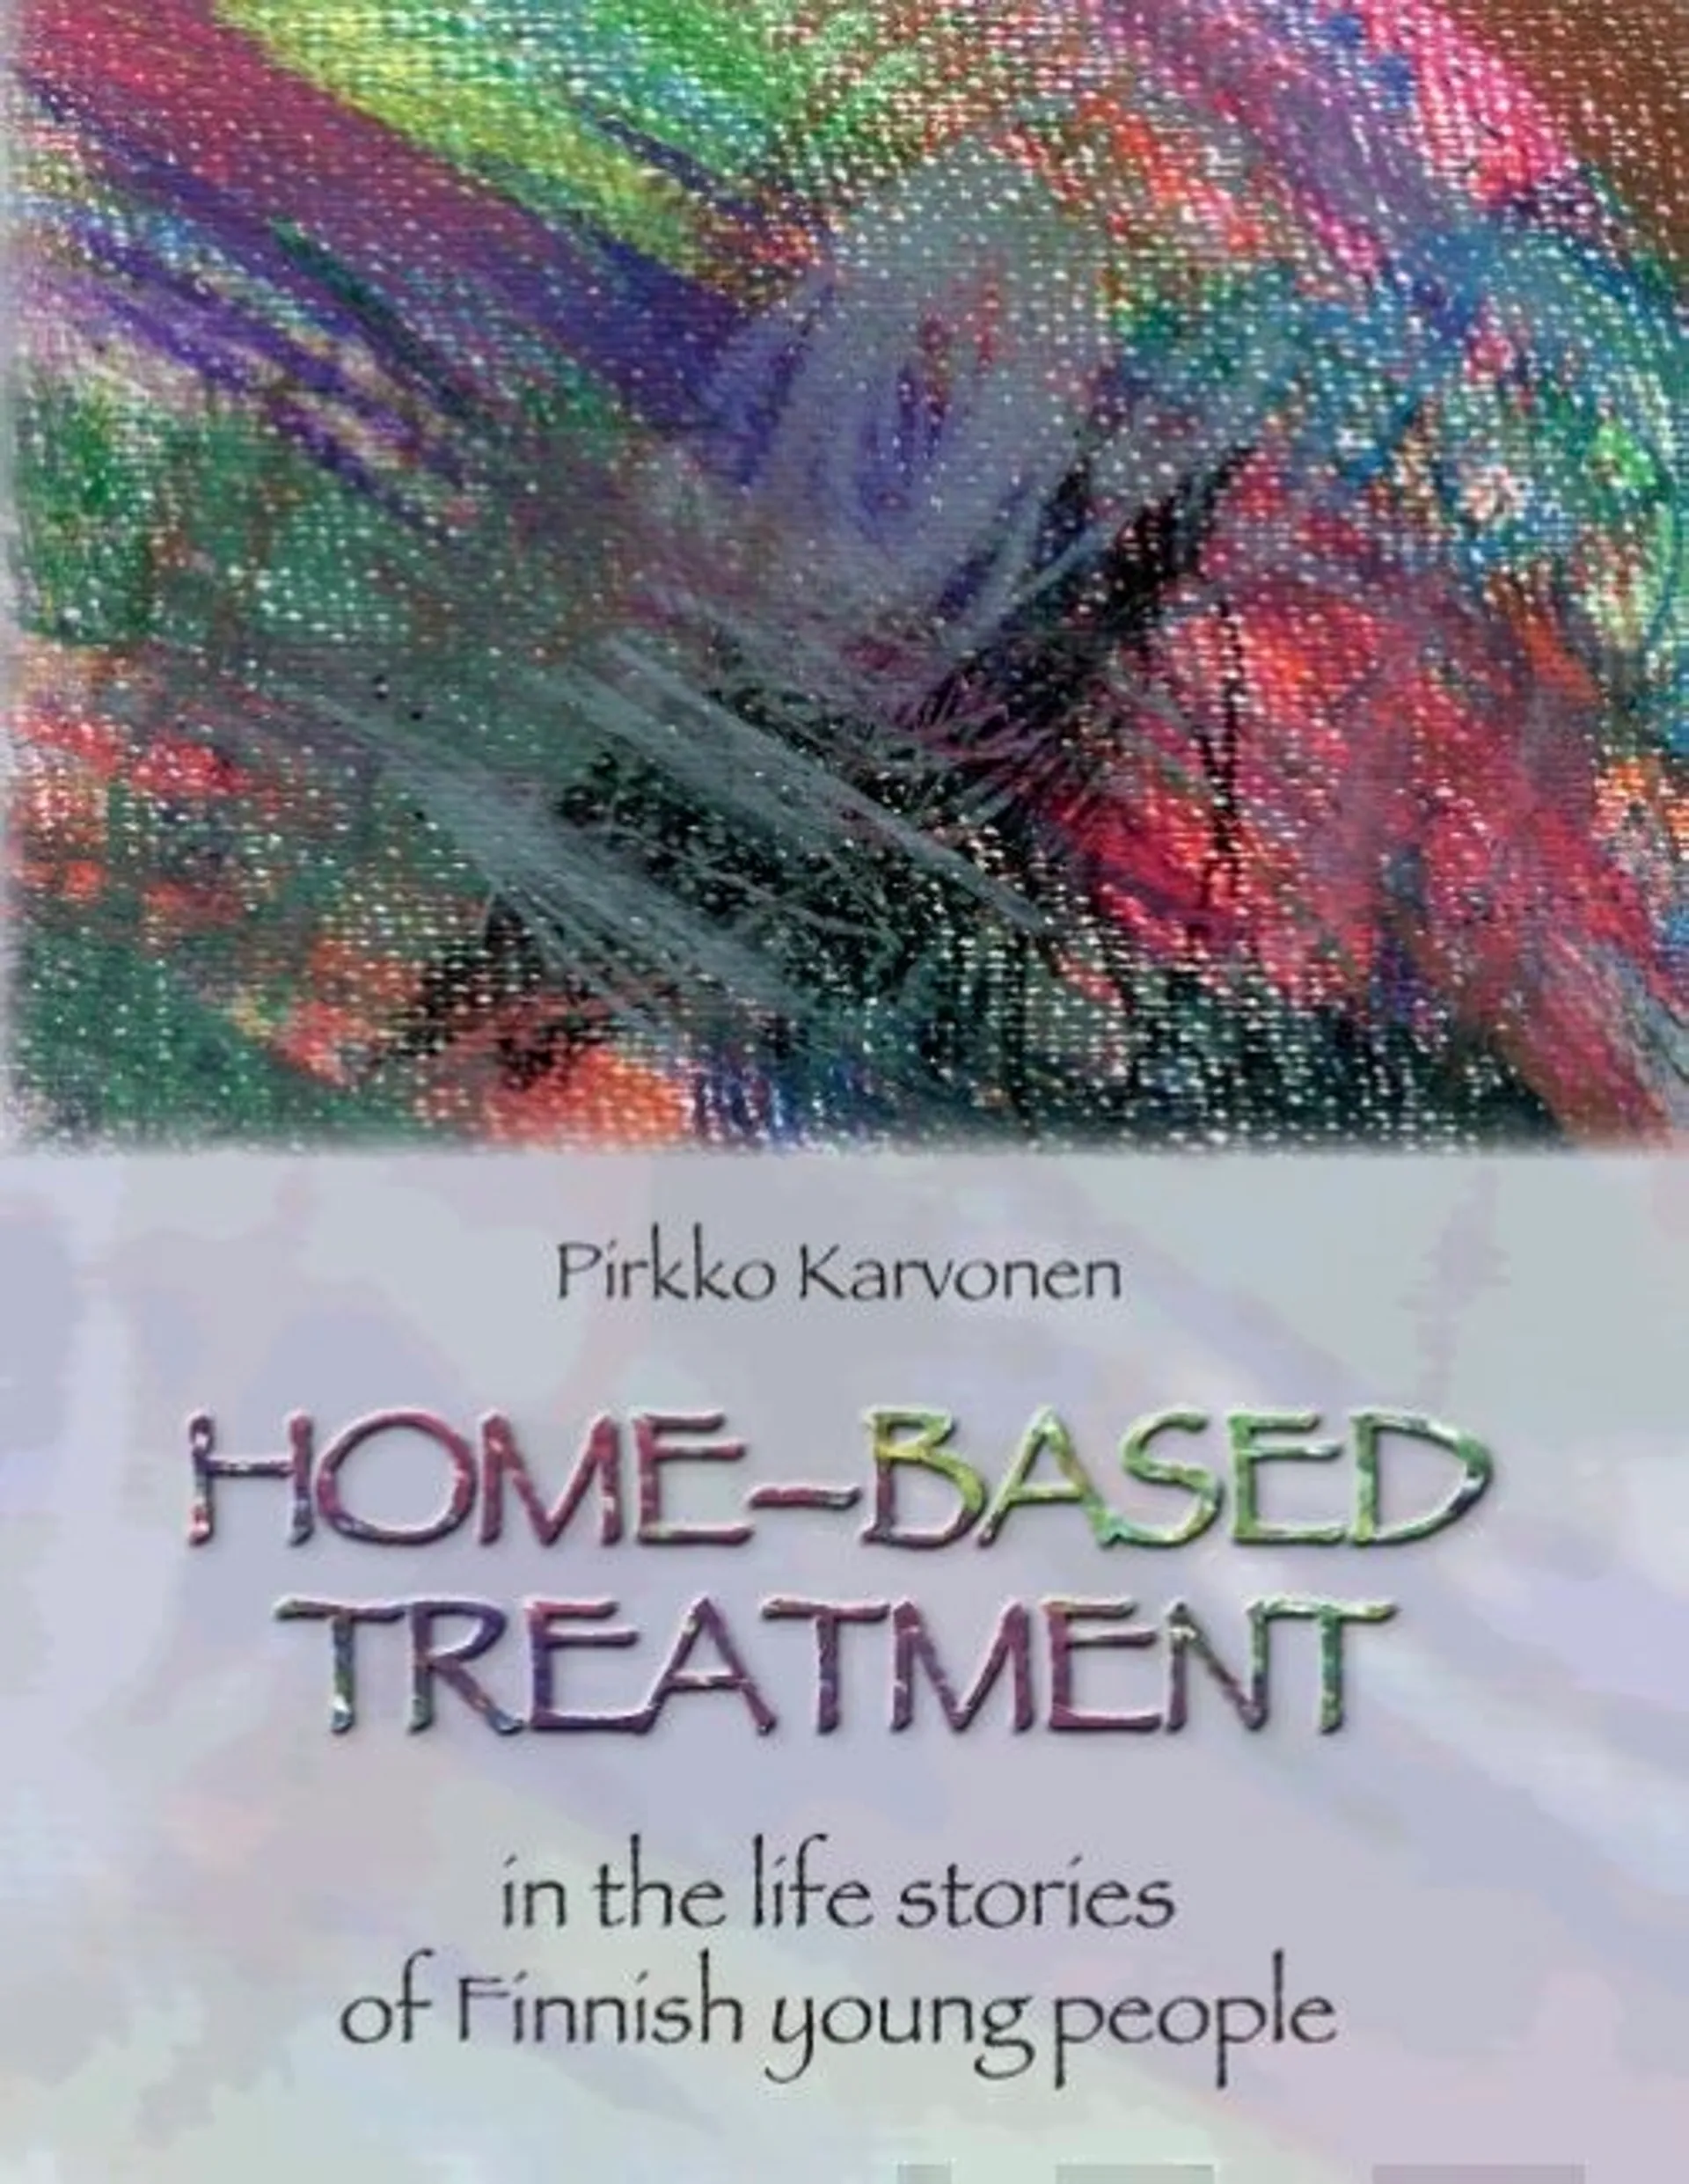 Karvonen, Home-based treatment